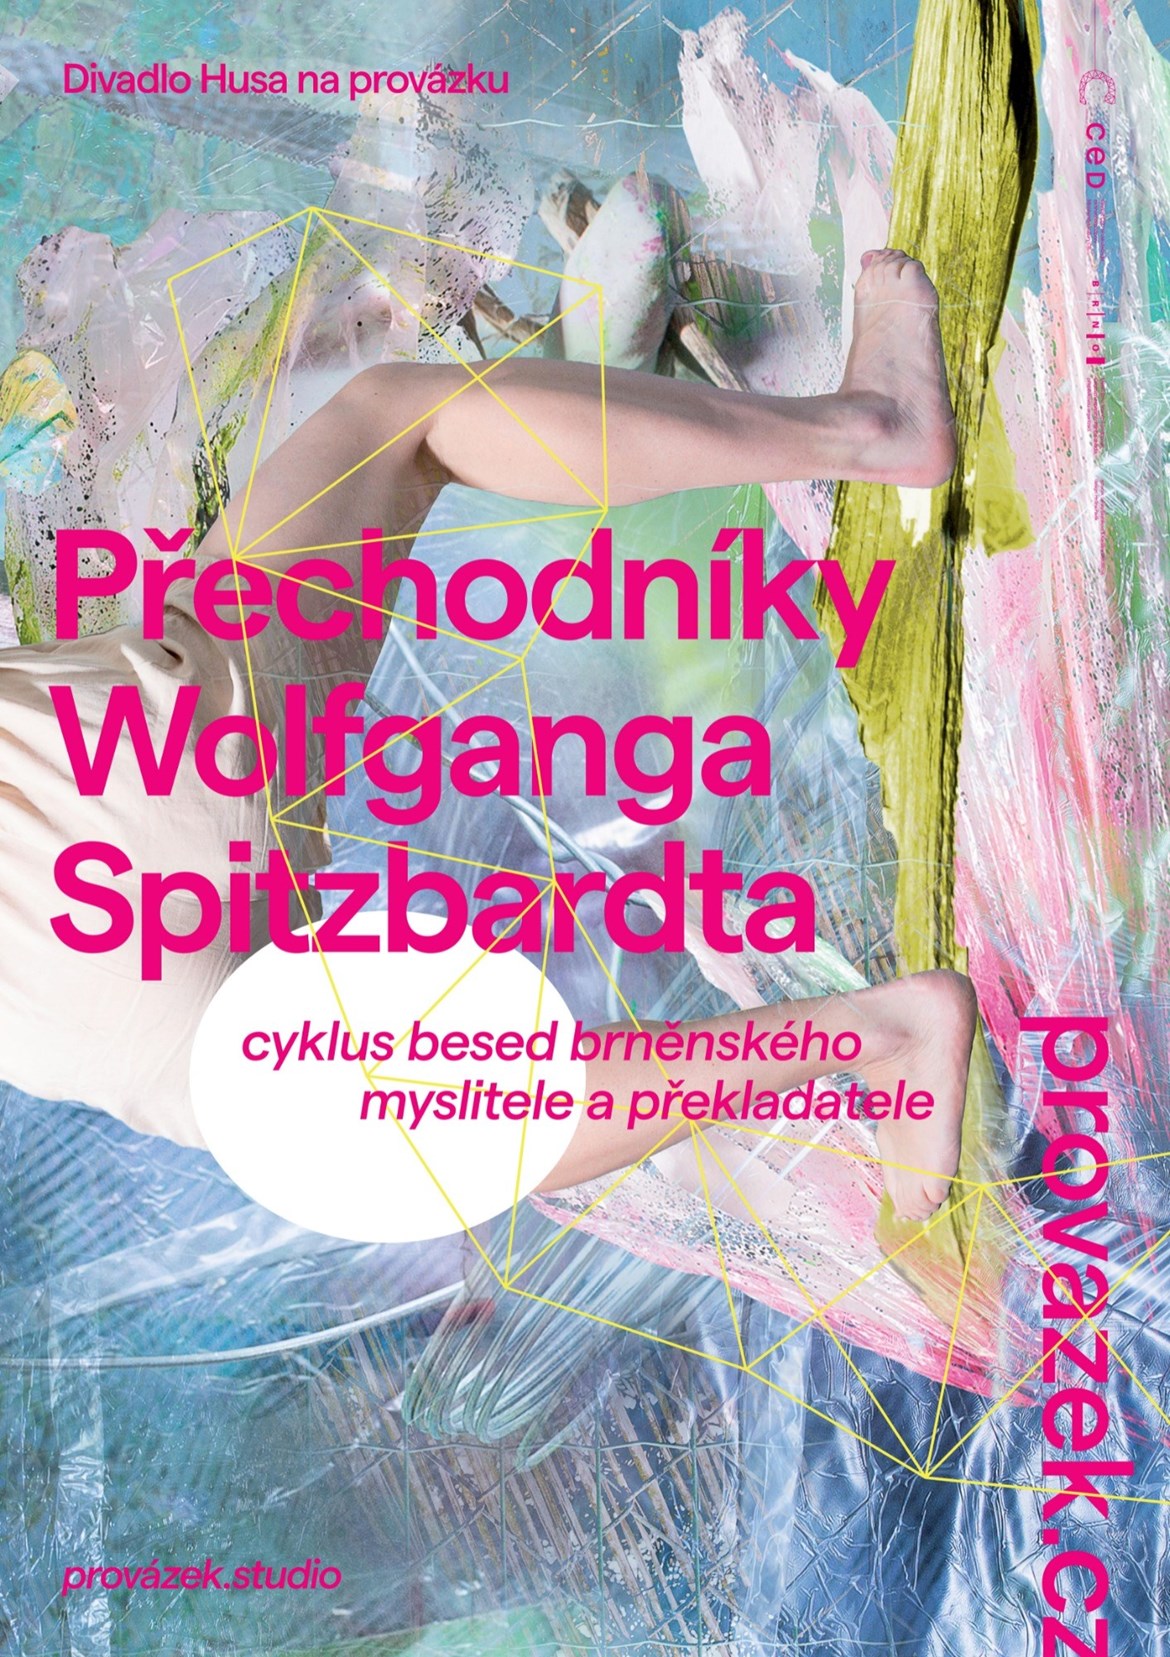 https://www.provazek.cz/cs/prechodniky-wolfganga-spitzbardta